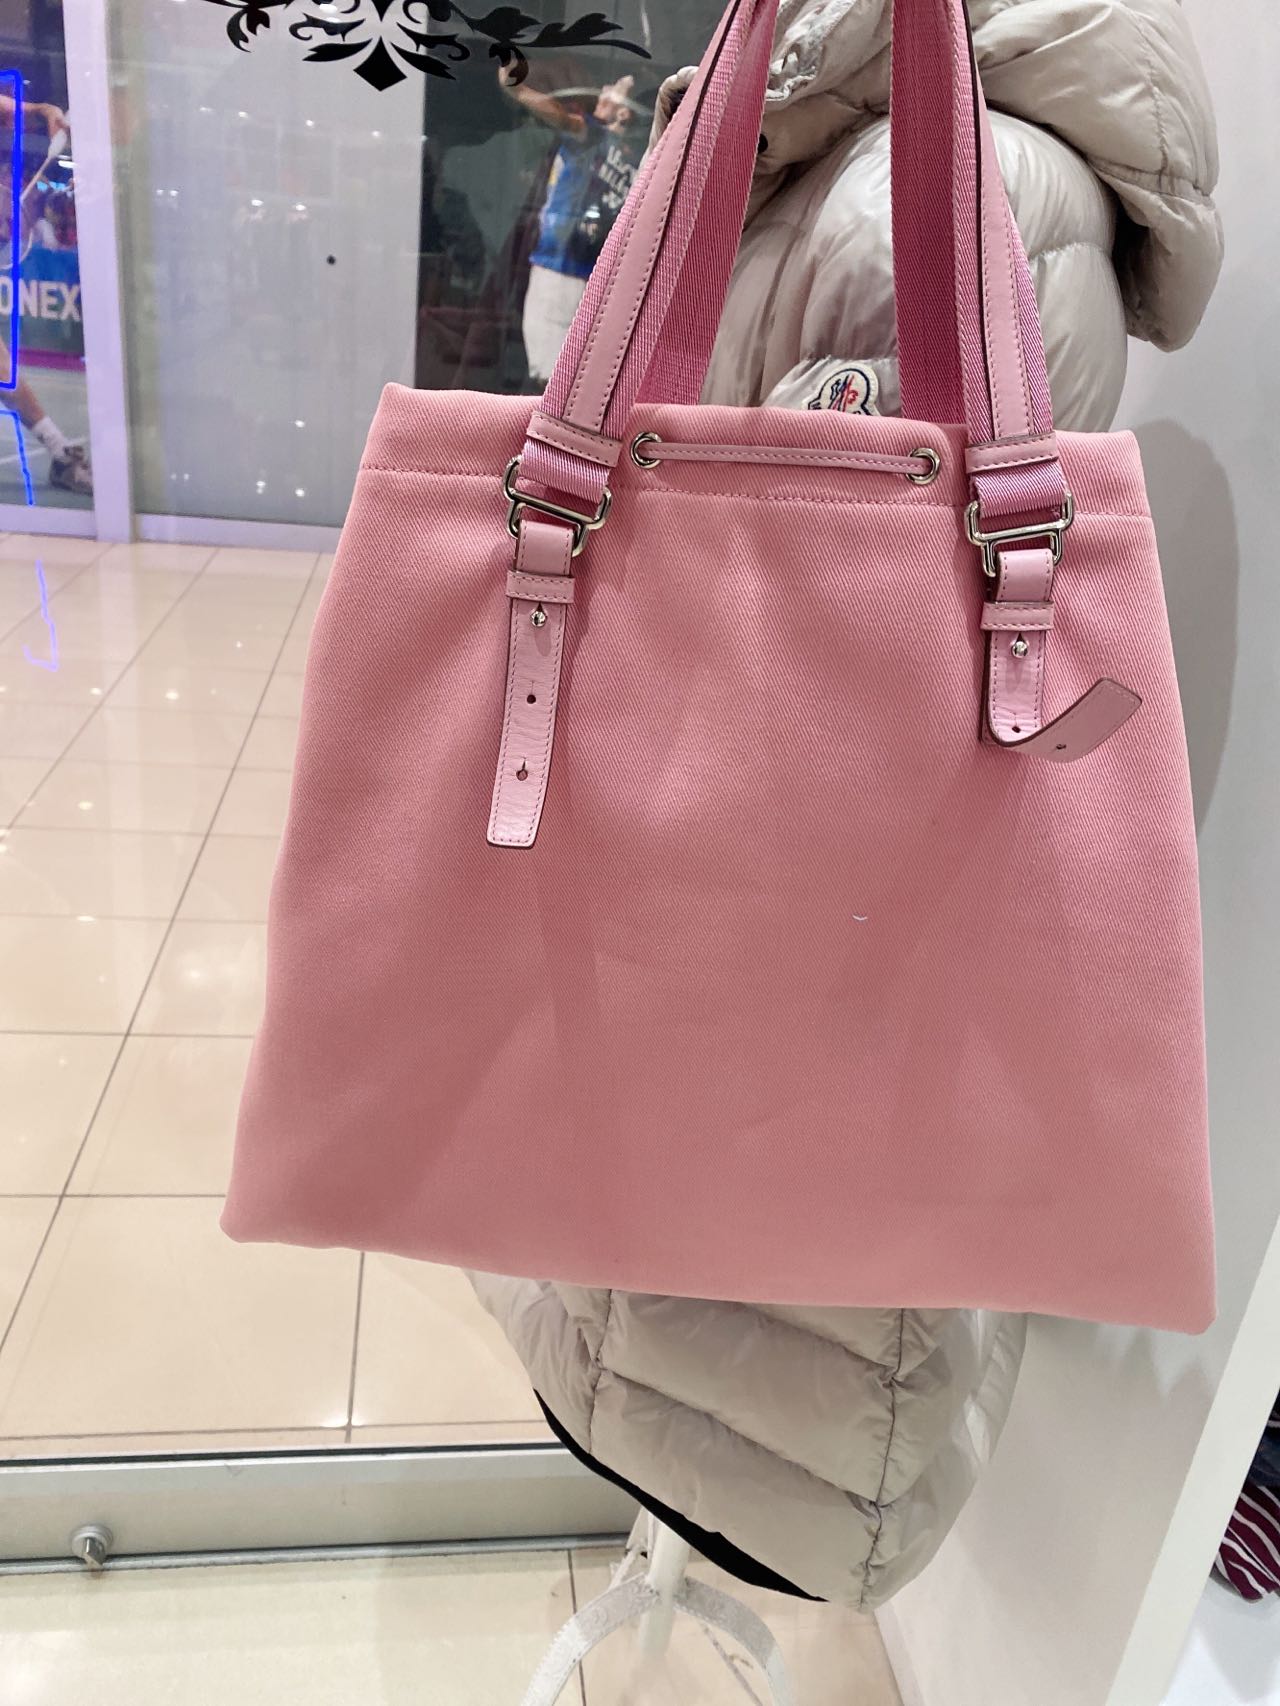 YSLCanvas Kahalo Pink Tote Bag